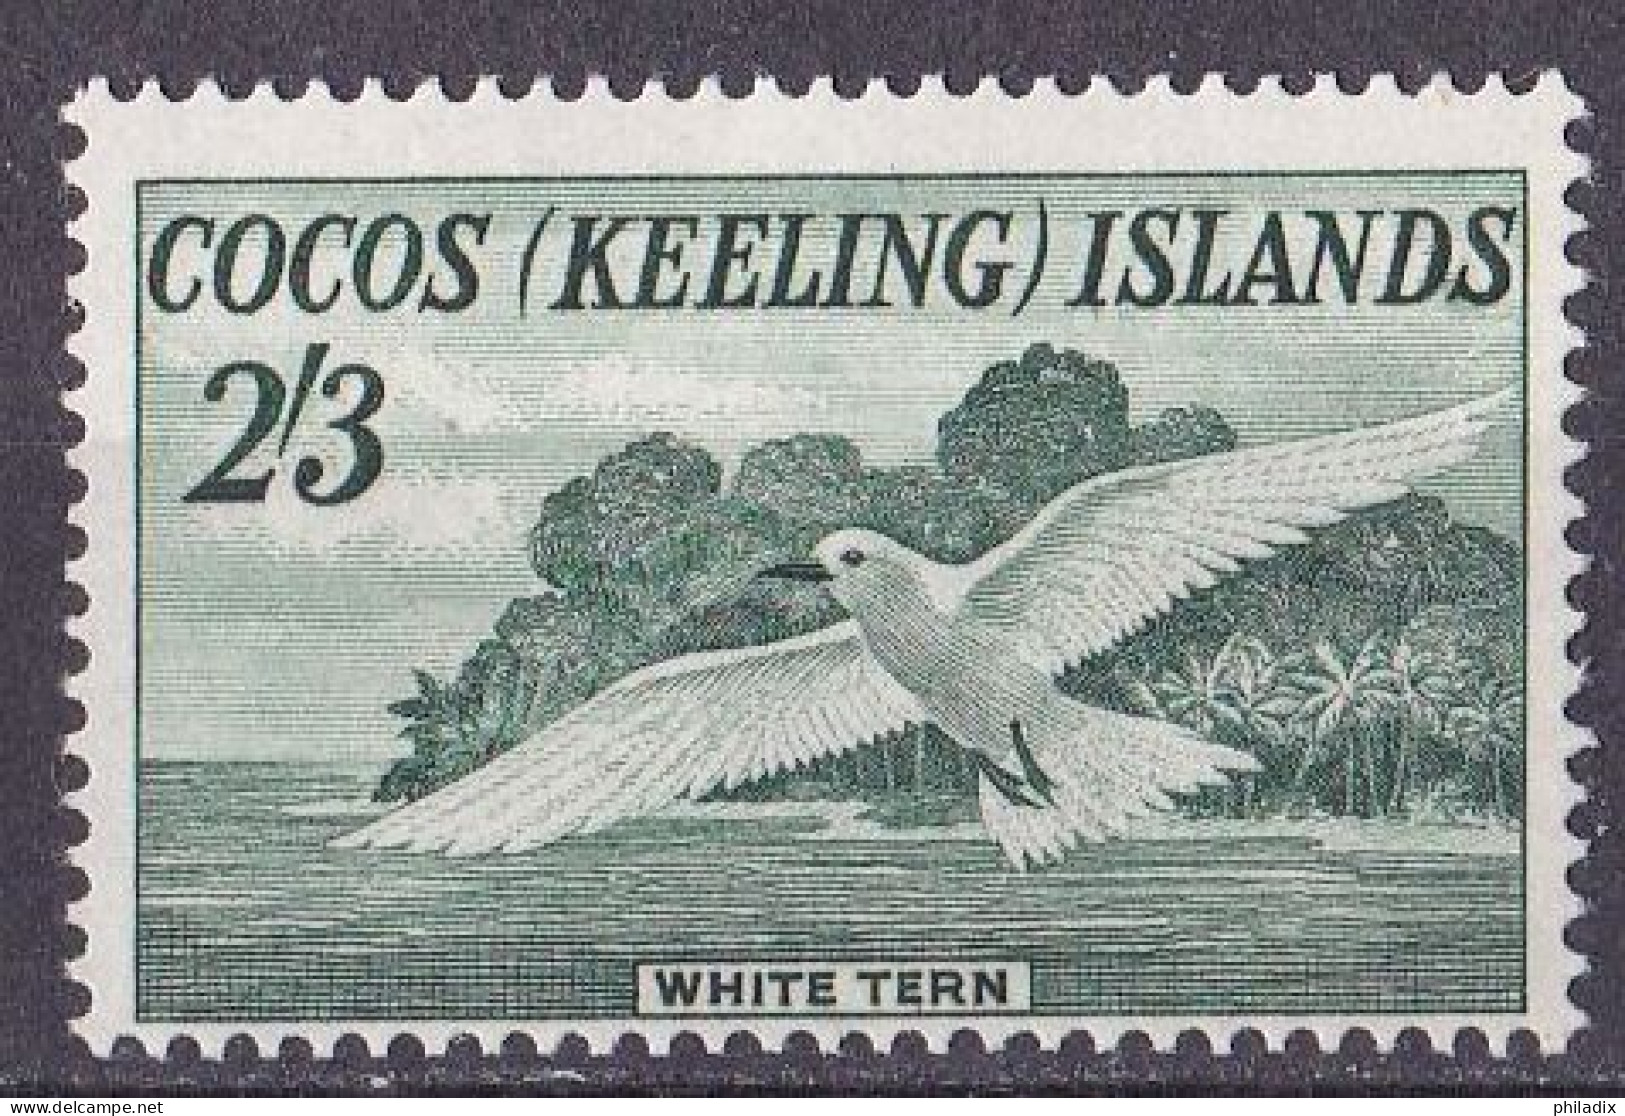 Kokosinseln (Keeling Island) Marke Von 1963 **/MNH (A5-9) - Cocos (Keeling) Islands